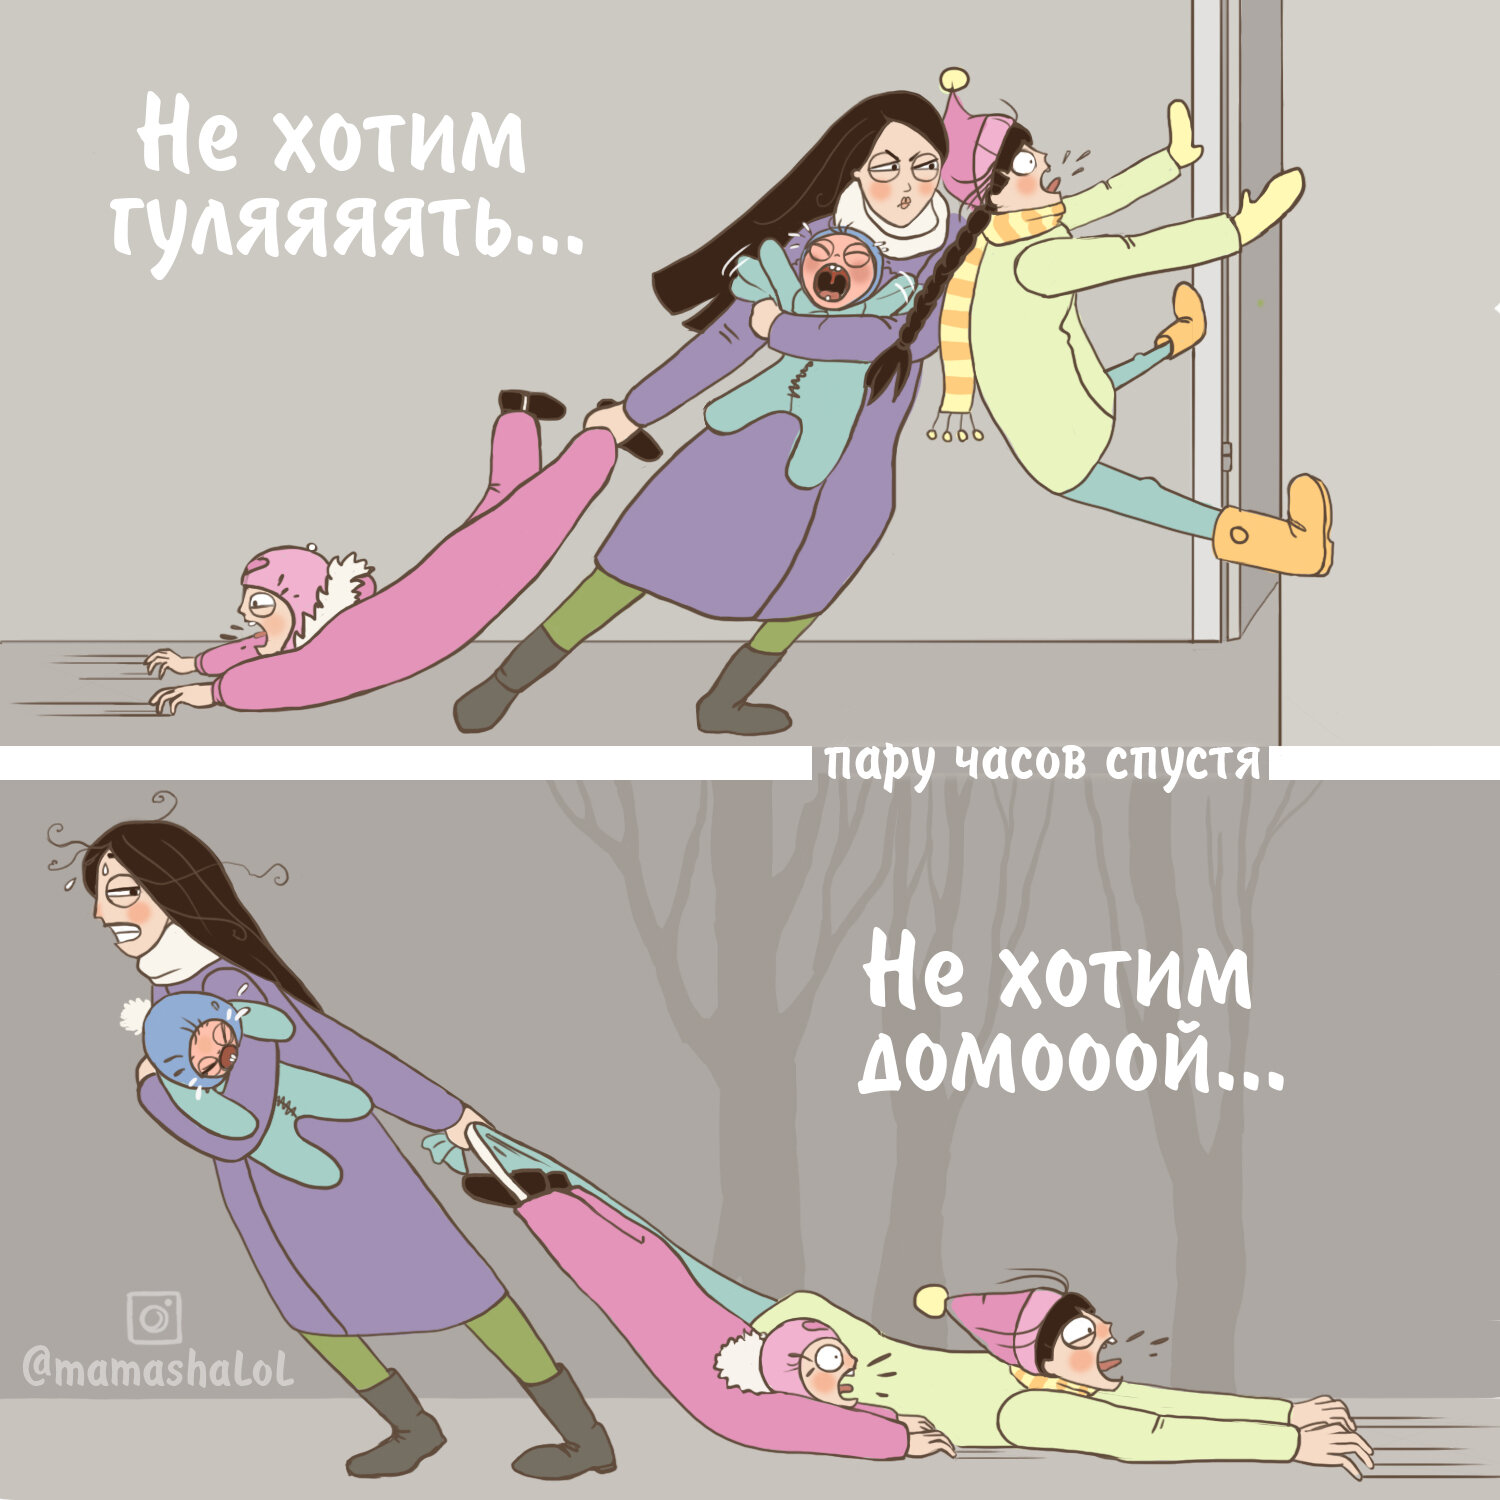 mamashalol01 - Минутка юмора от многодетной москвички: комиксы про радости родительства